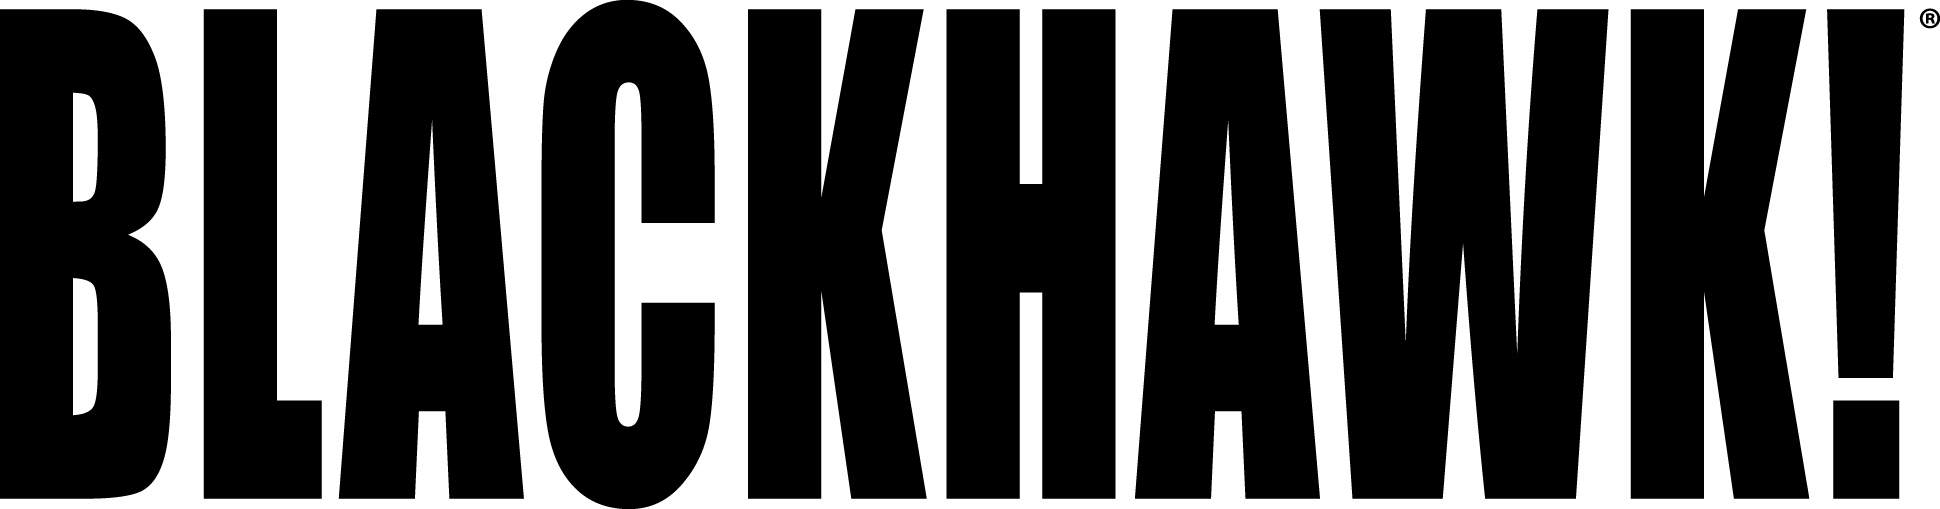 Résultat de recherche d'images pour "blackhawk logo"